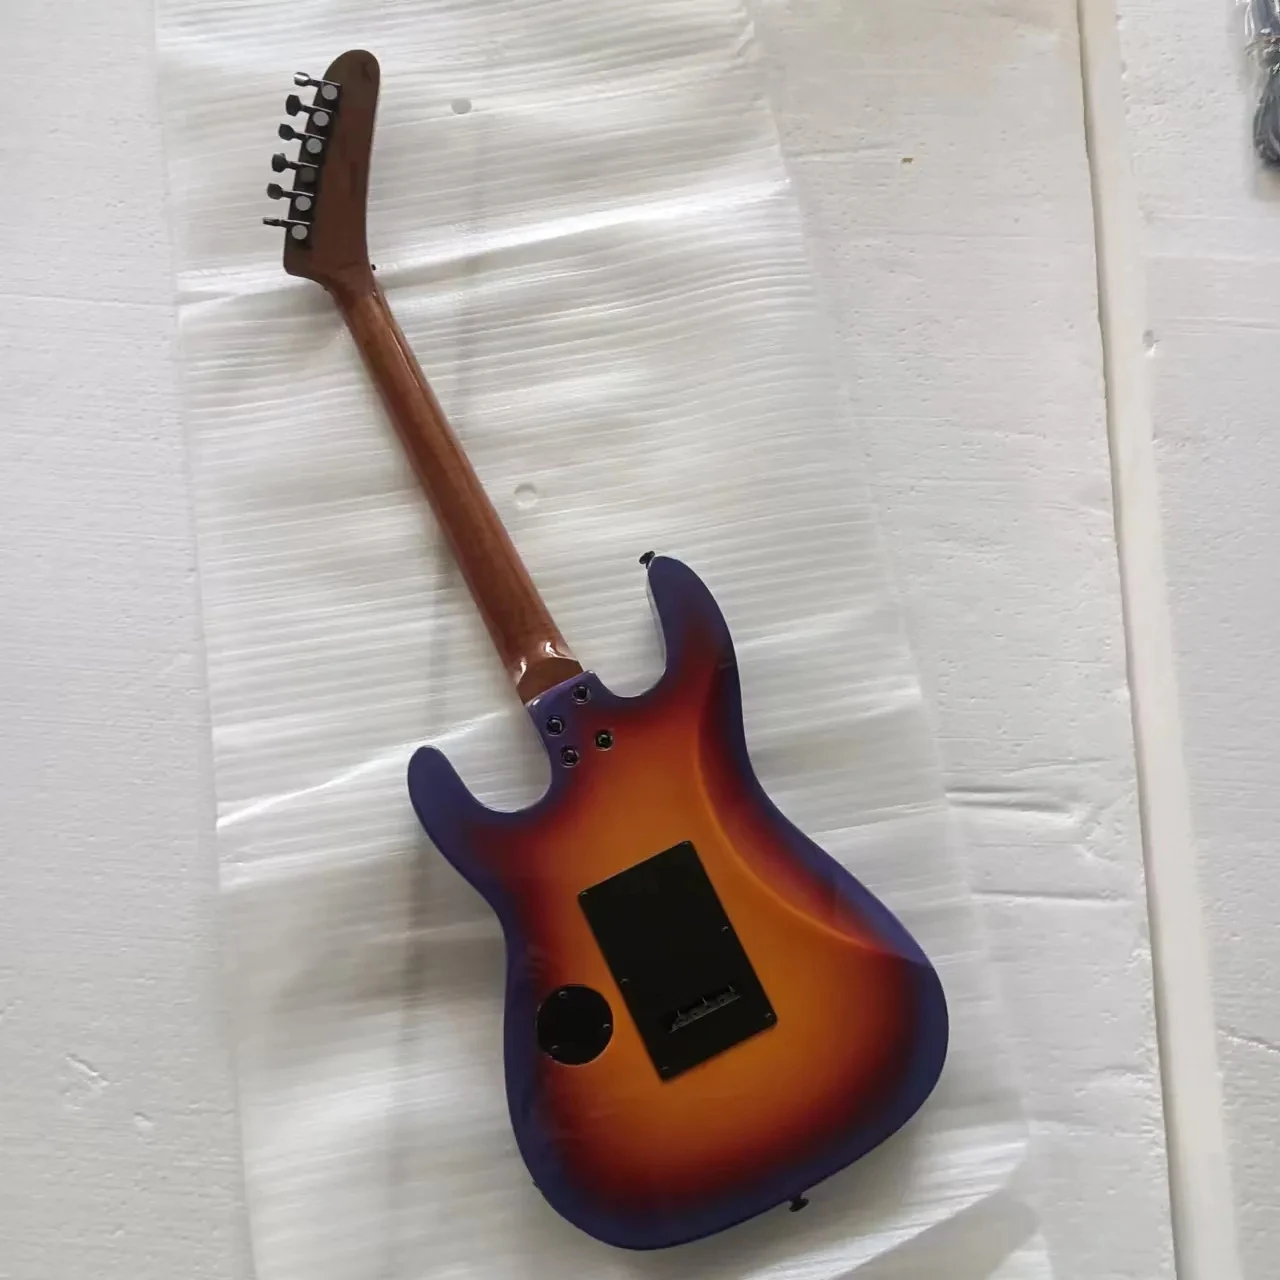 Електрическа китара George Lynch Издание на поръчка, рядка китара, безплатна доставка